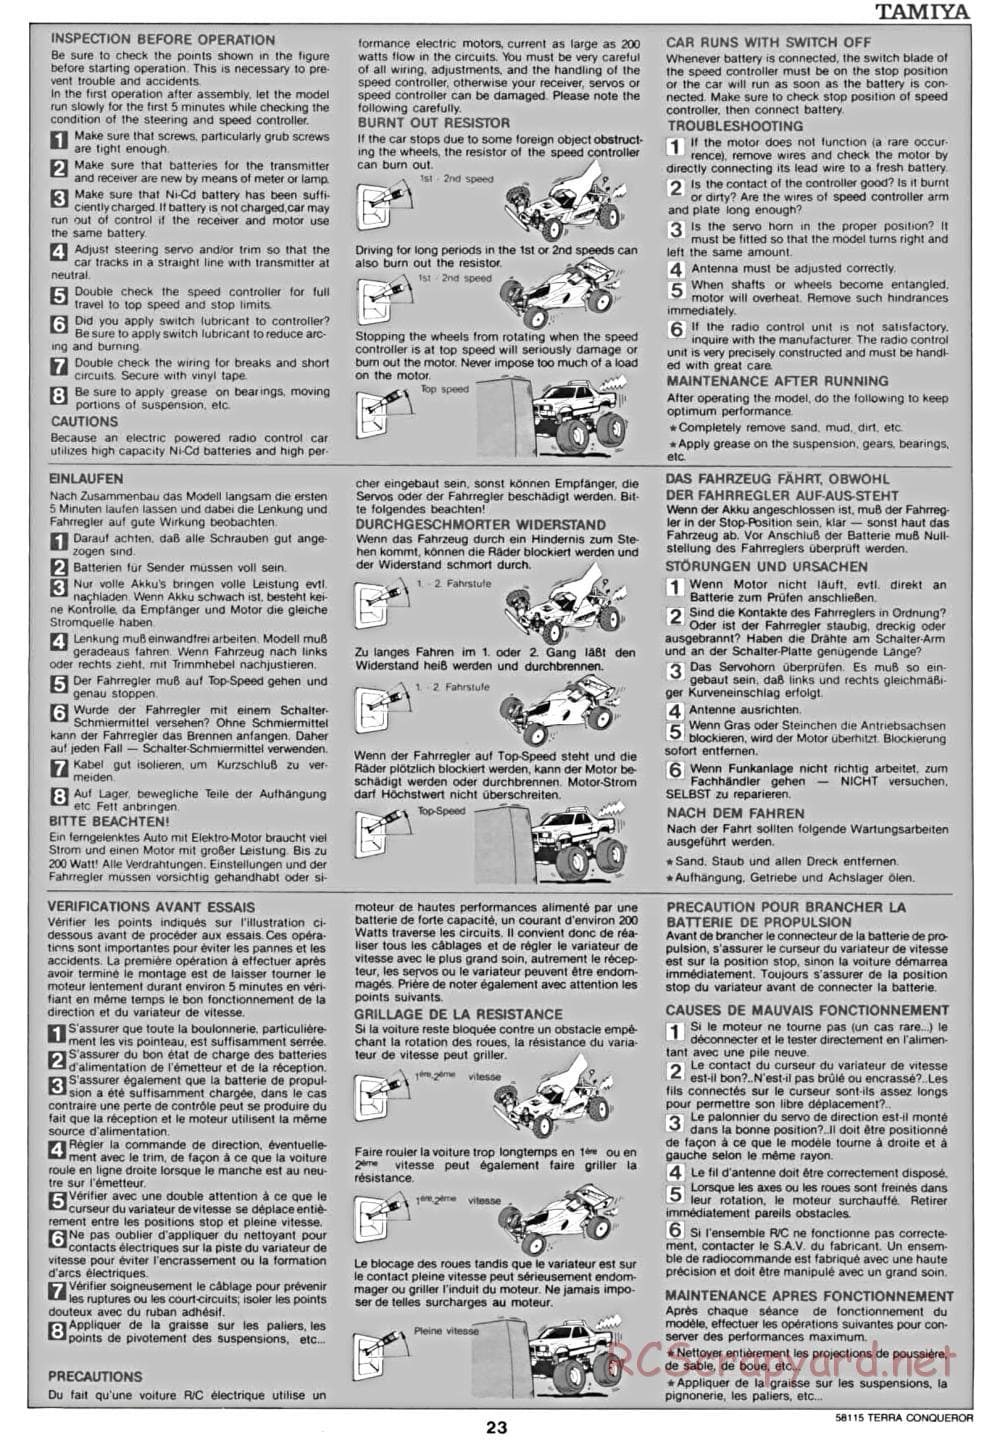 Tamiya - Terra Conqueror Chassis - Manual - Page 23